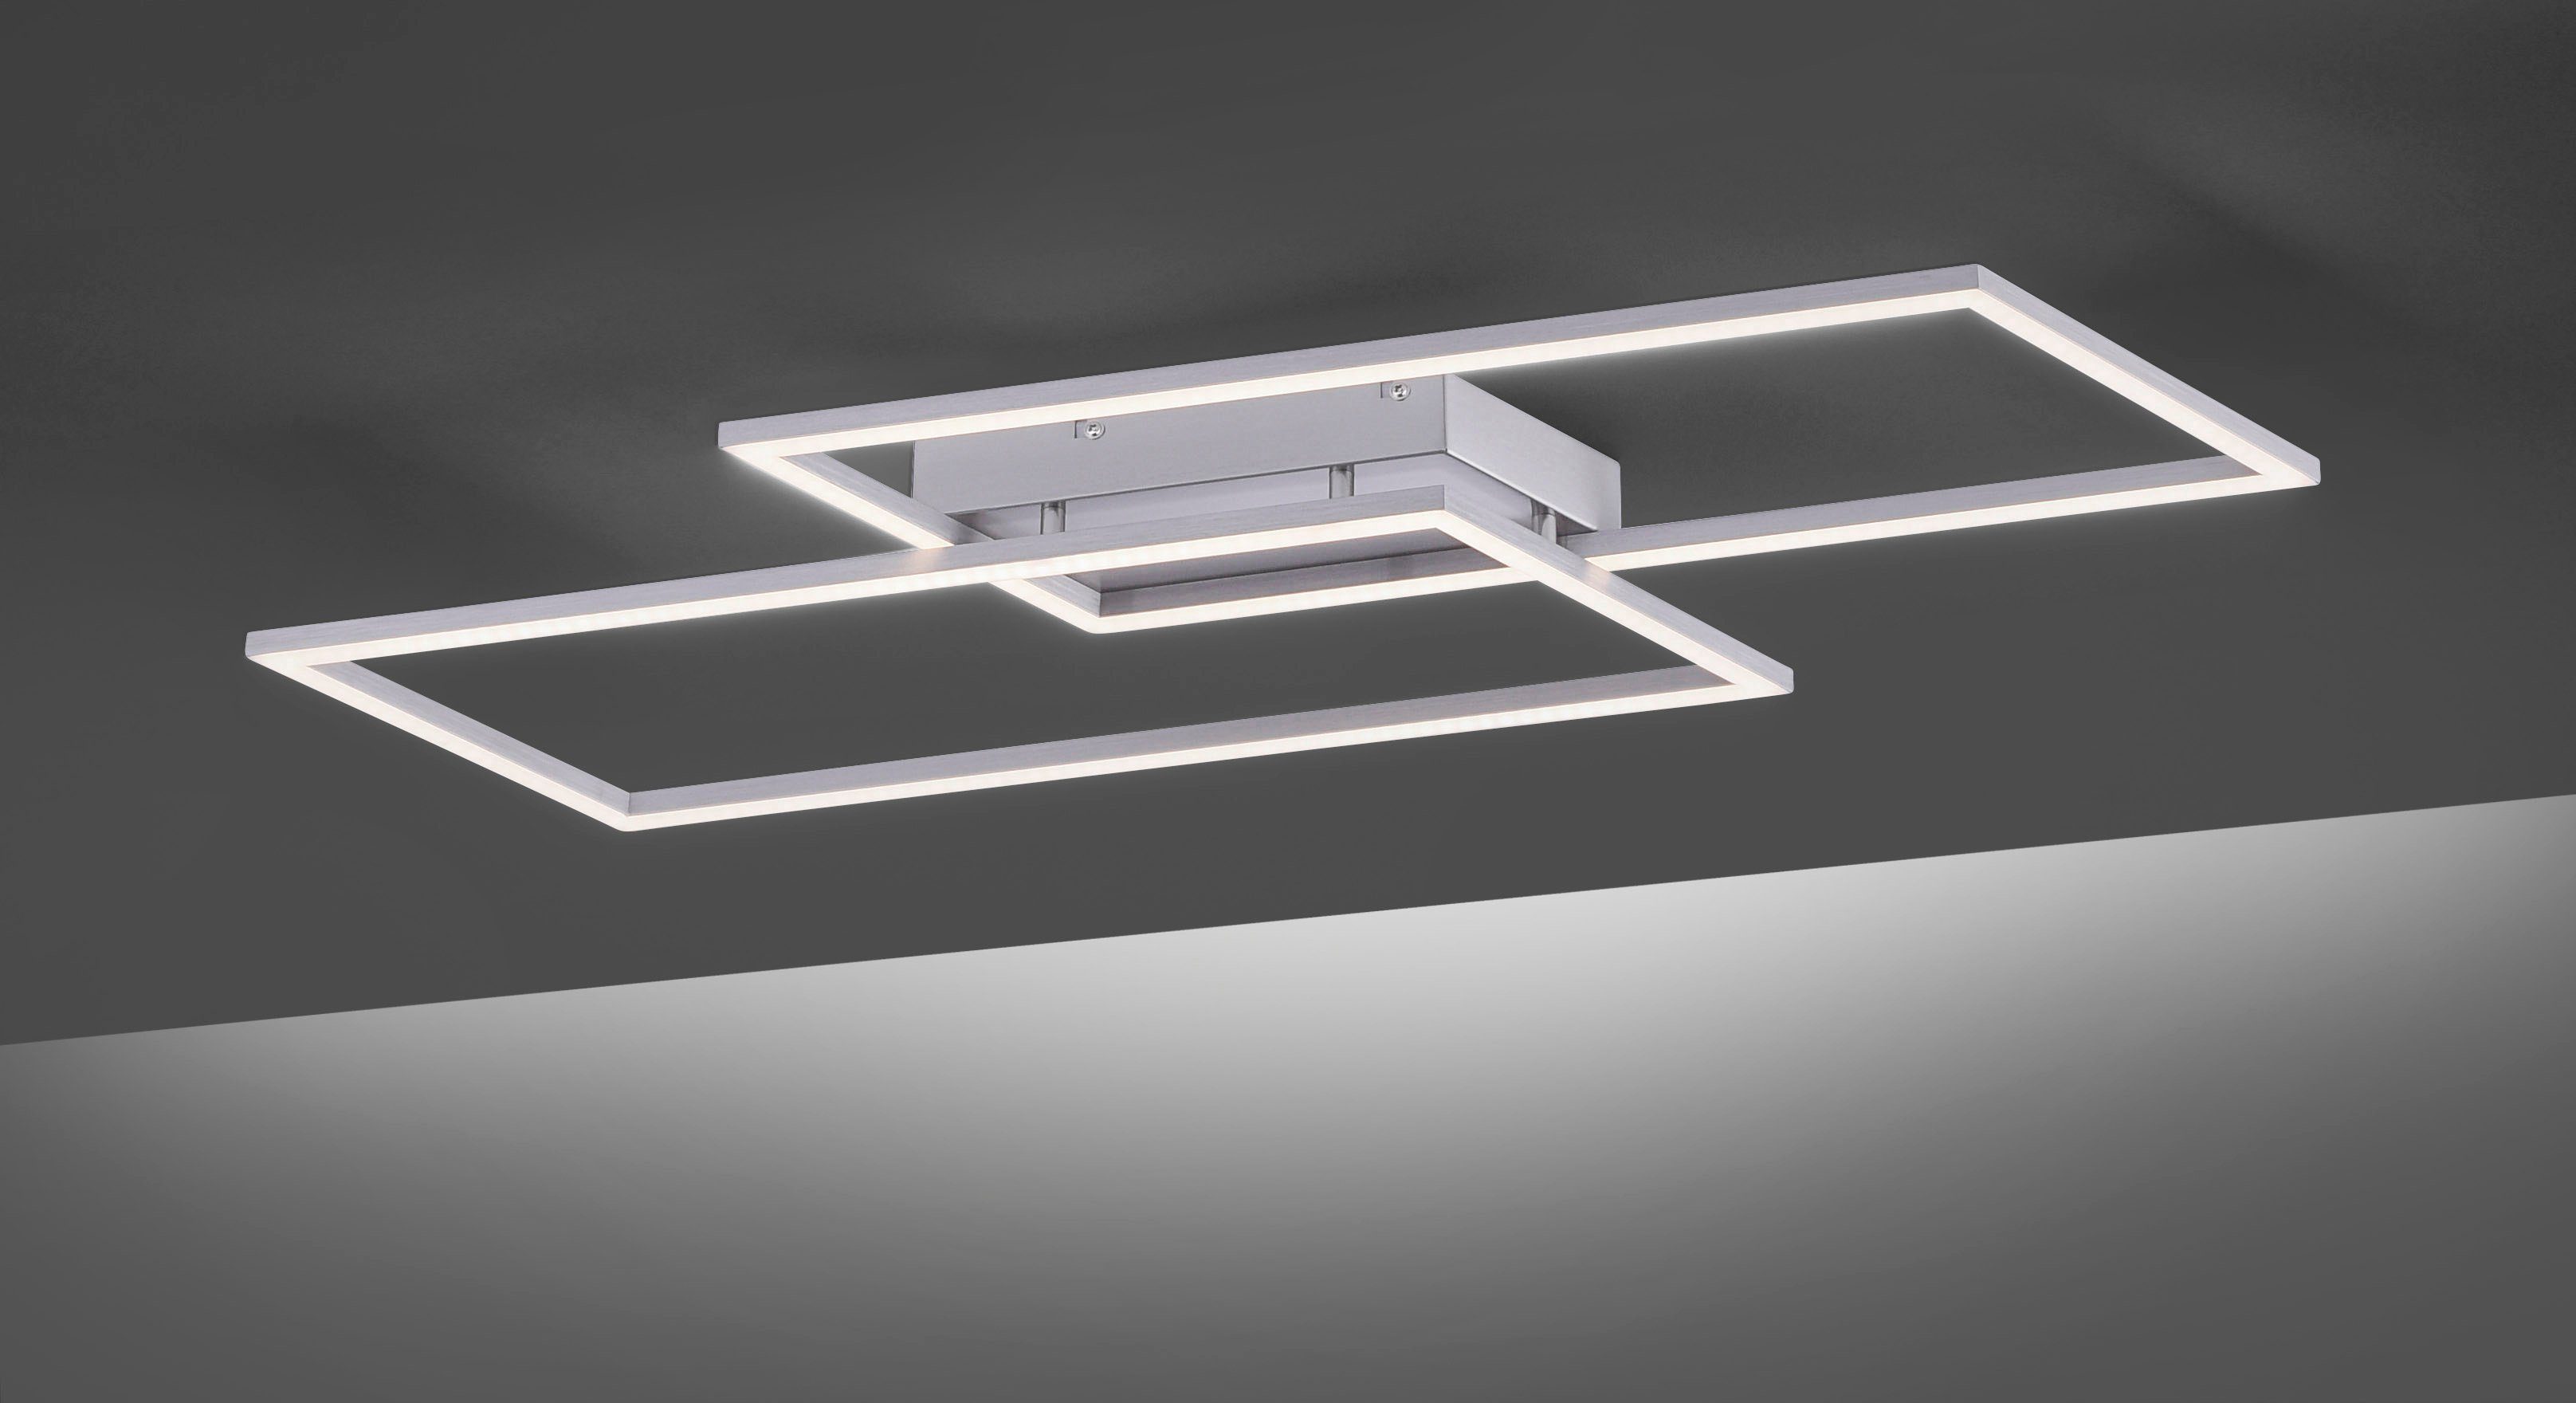 Paul Neuhaus LED Deckenleuchte dimmbar Wandschalter über Warmweiß, Stufenlos fest integriert, vorhandenen LED Dimmfunktion, Inigo